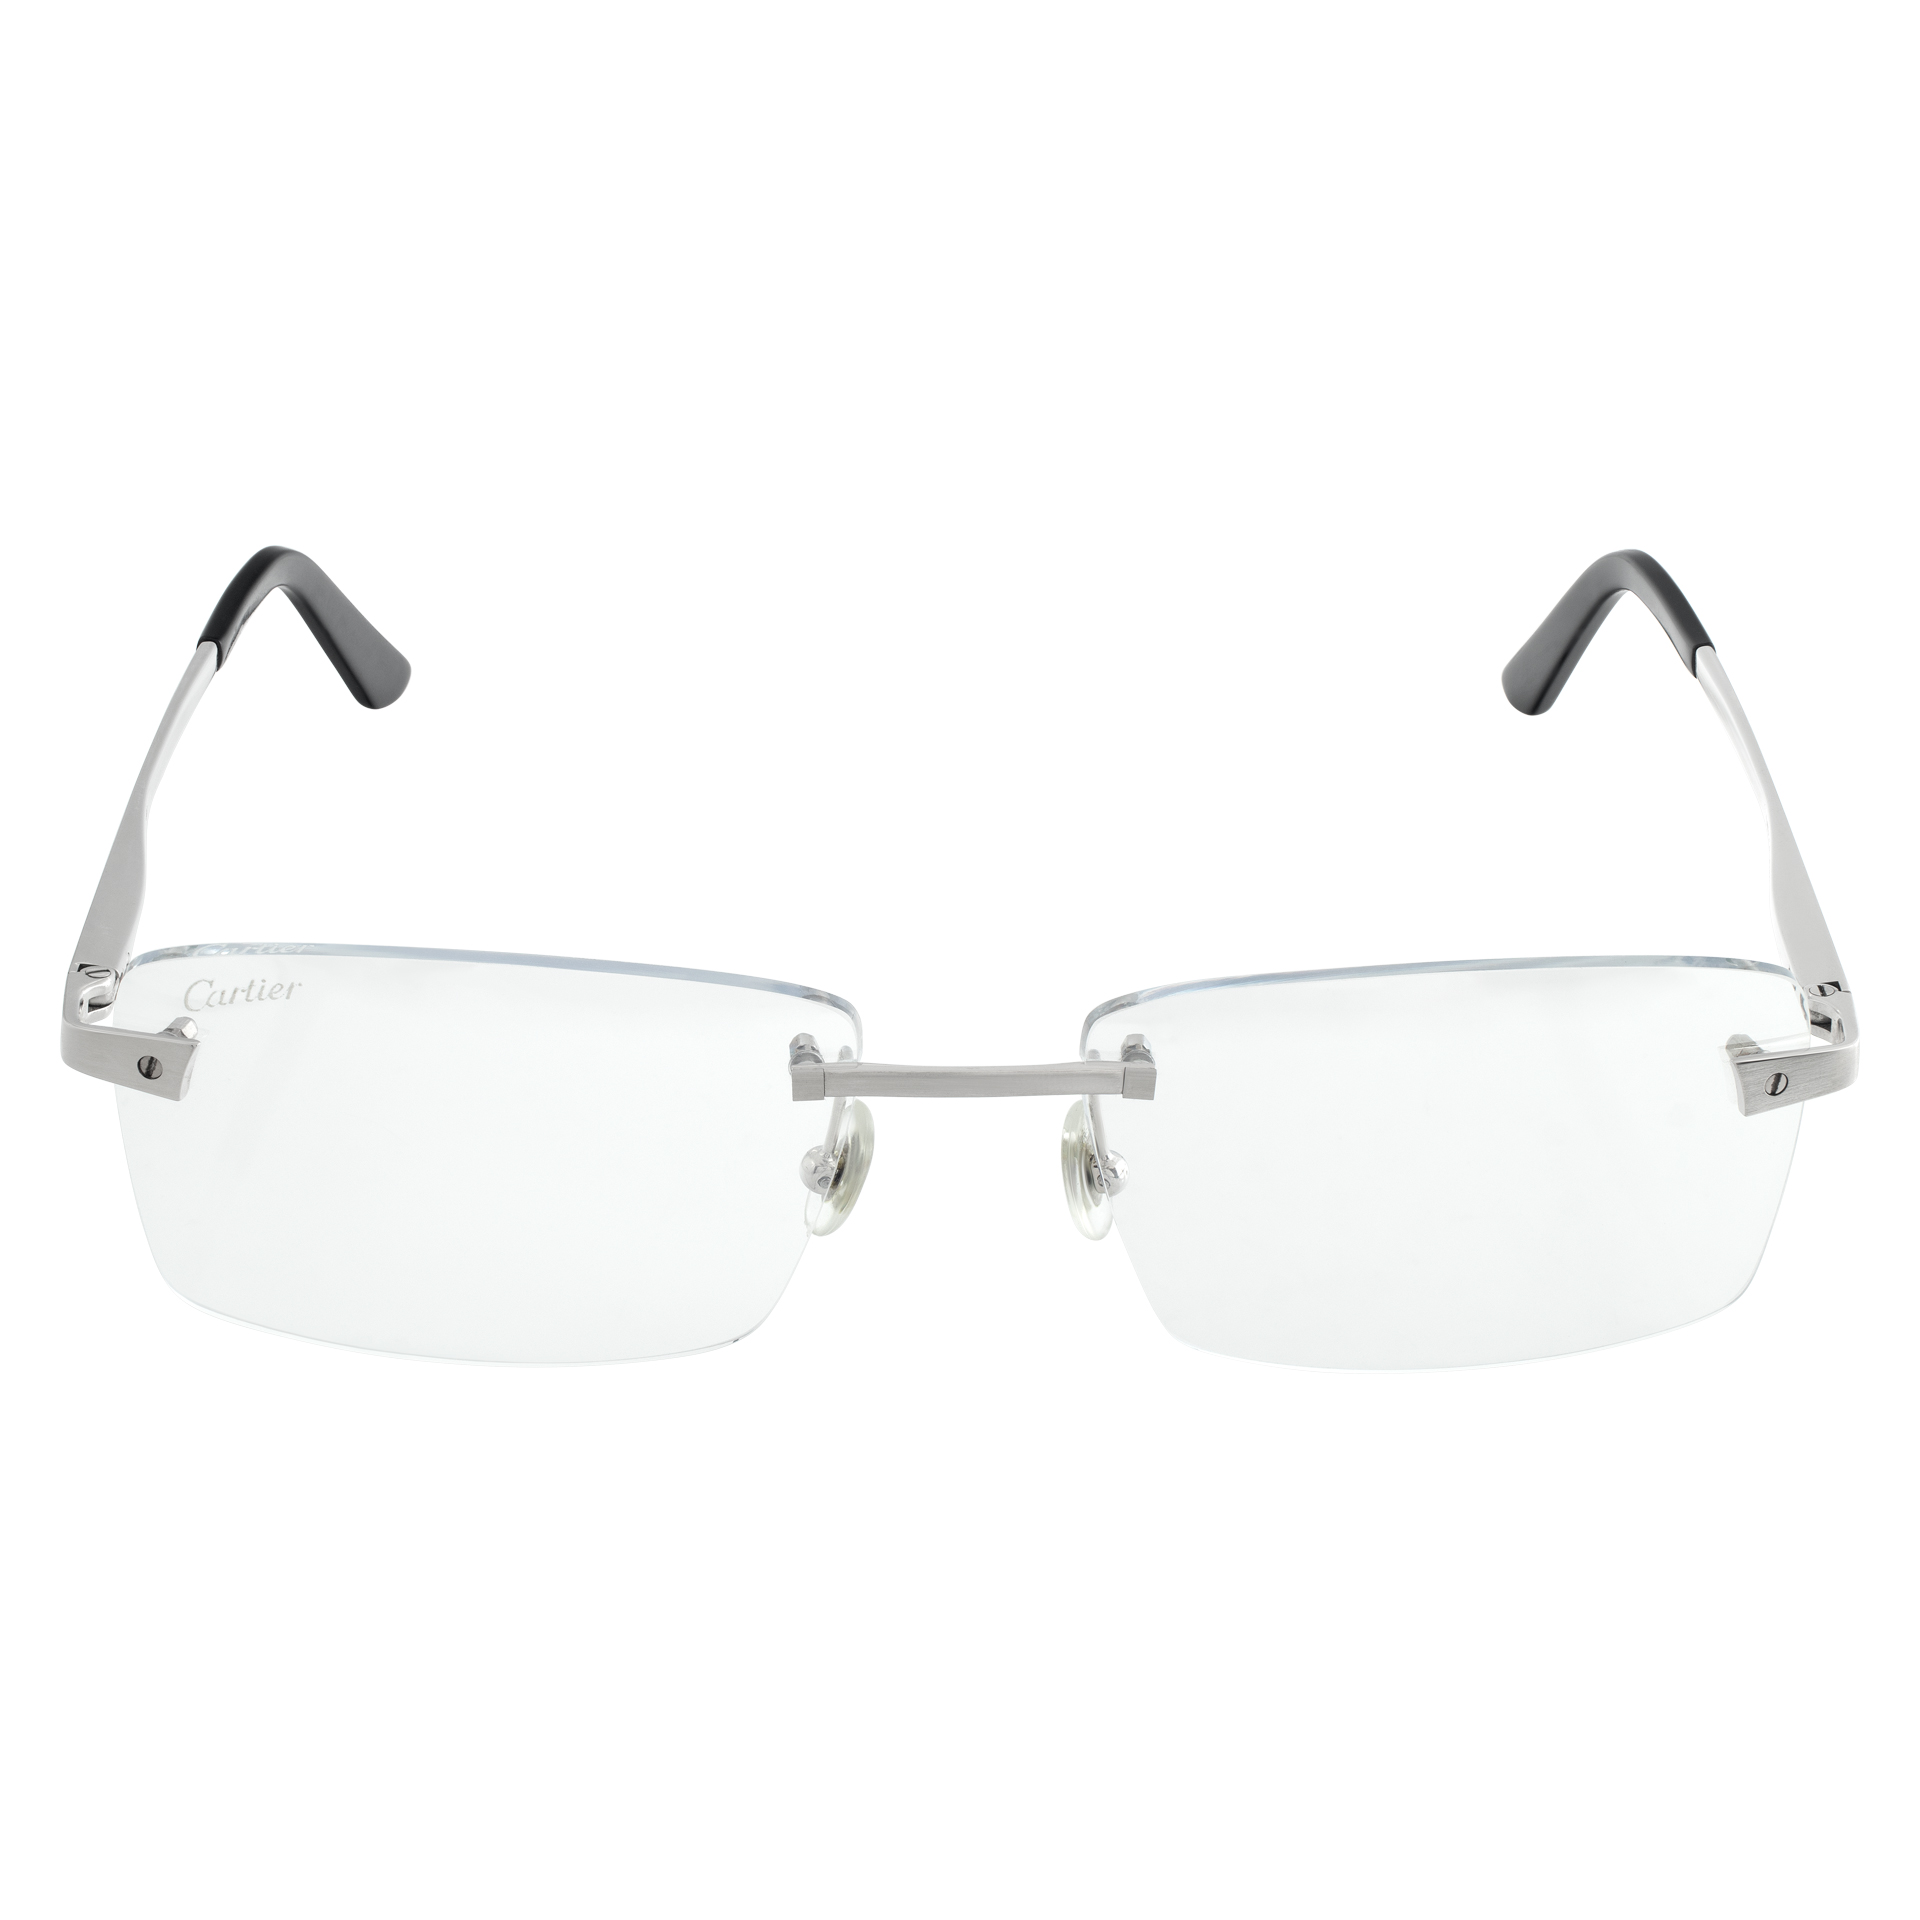 Cartier Rimless Silver Frame Glasses